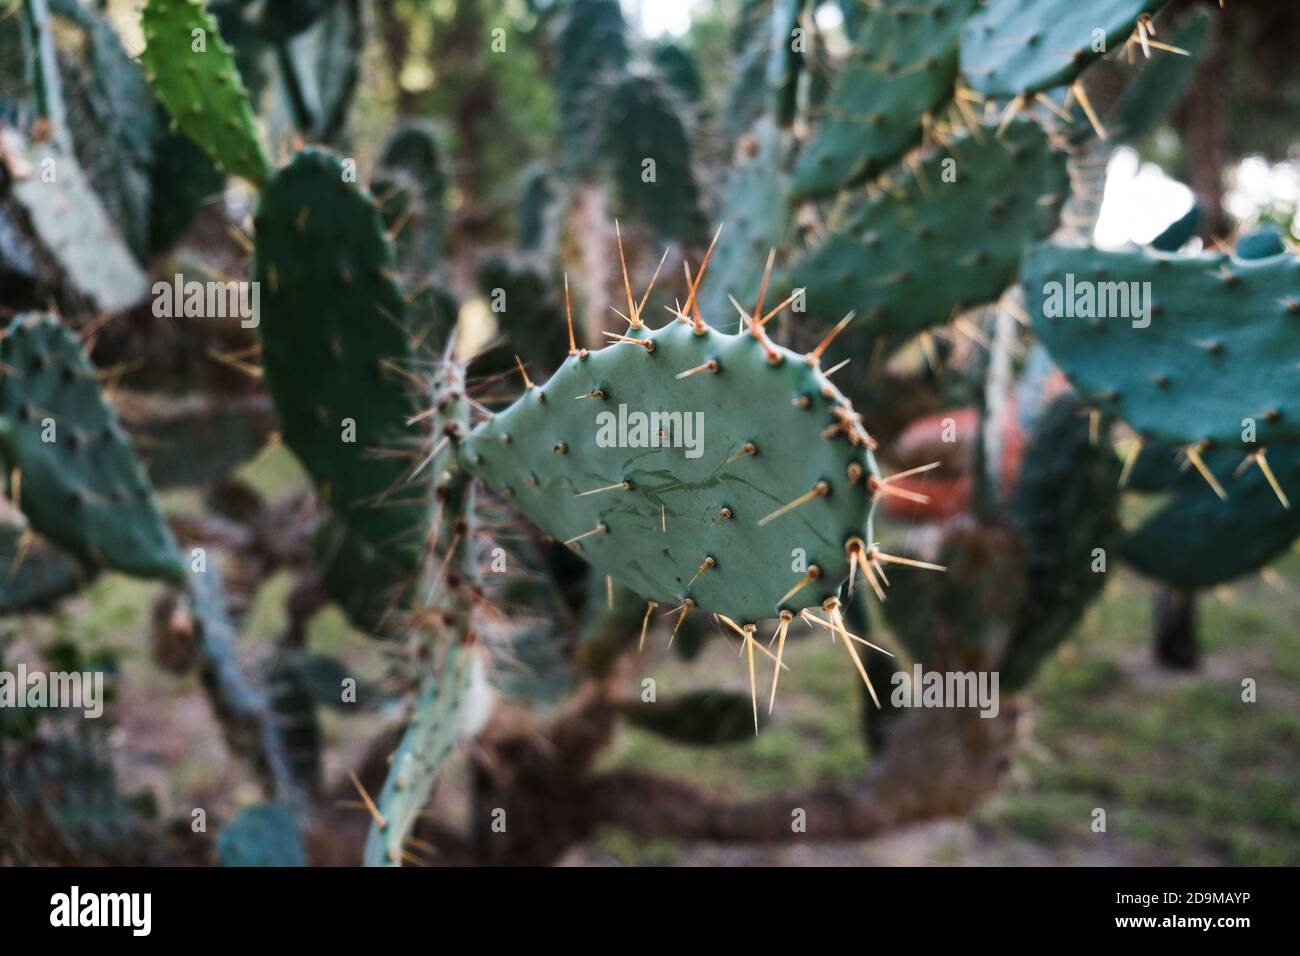 Vista de cerca de hojas de cactus verdes con espinas afiladas. Campo de cactus de pera espinosa ciego. Hermoso fondo tropical. Cactuses naturales en crecimiento al aire libre Foto de stock